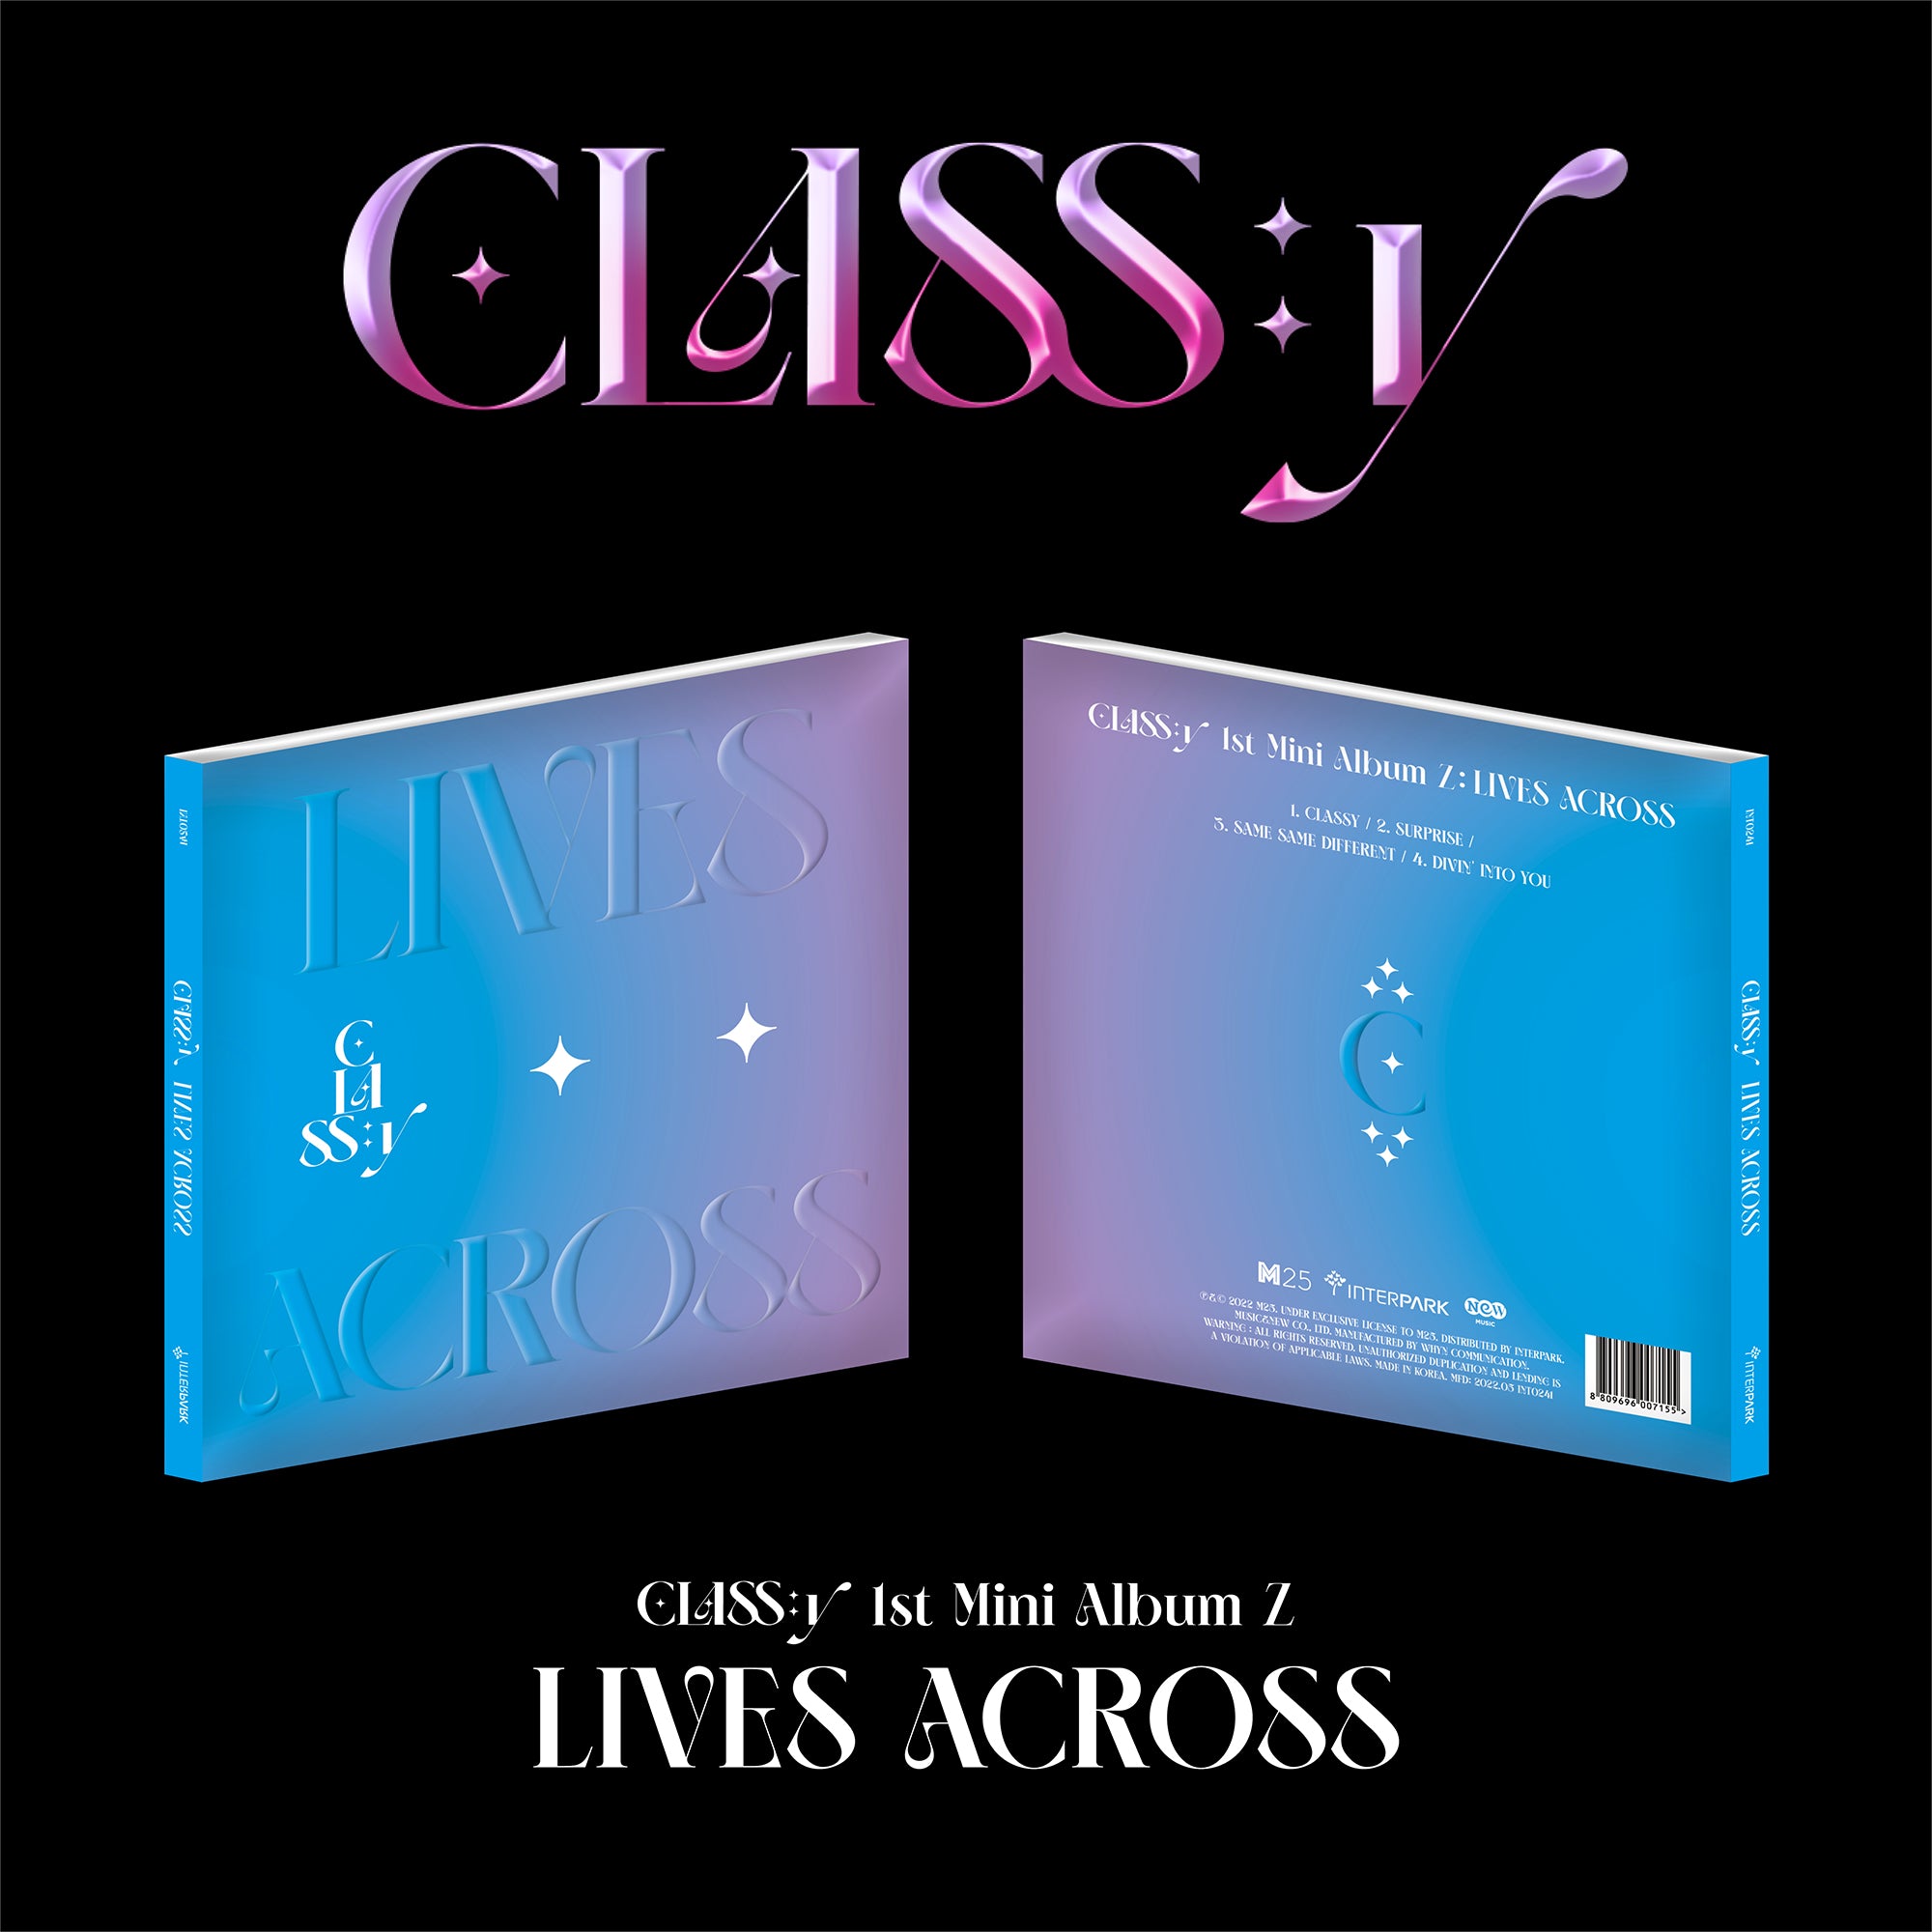 CLASS:Y 1ST MINI ALBUM Z 'LIVES ACROSS' COVER